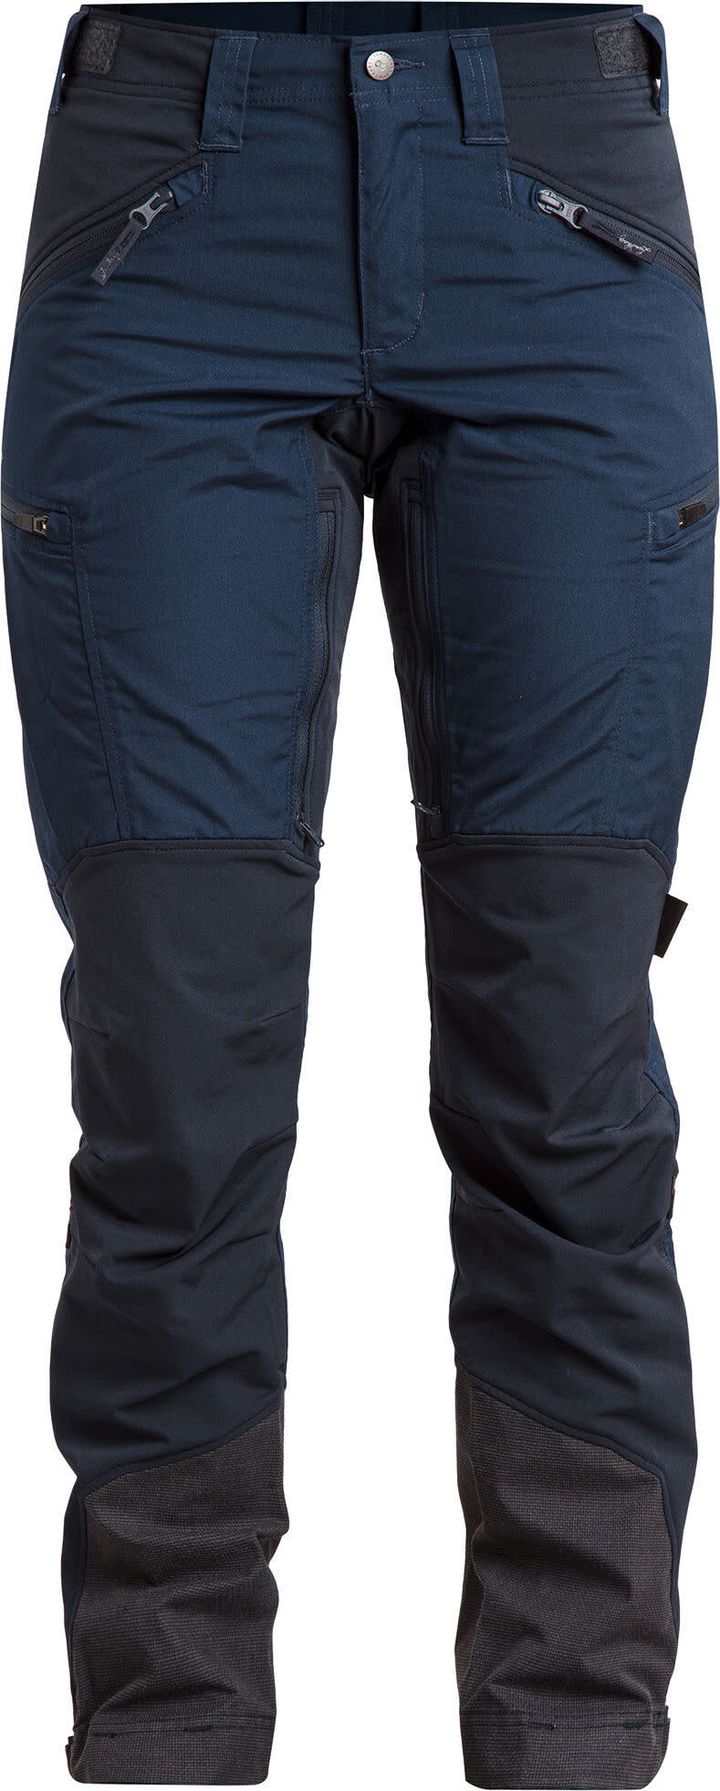 Women's Makke Pant Short Light Navy/Deep Blue Lundhags